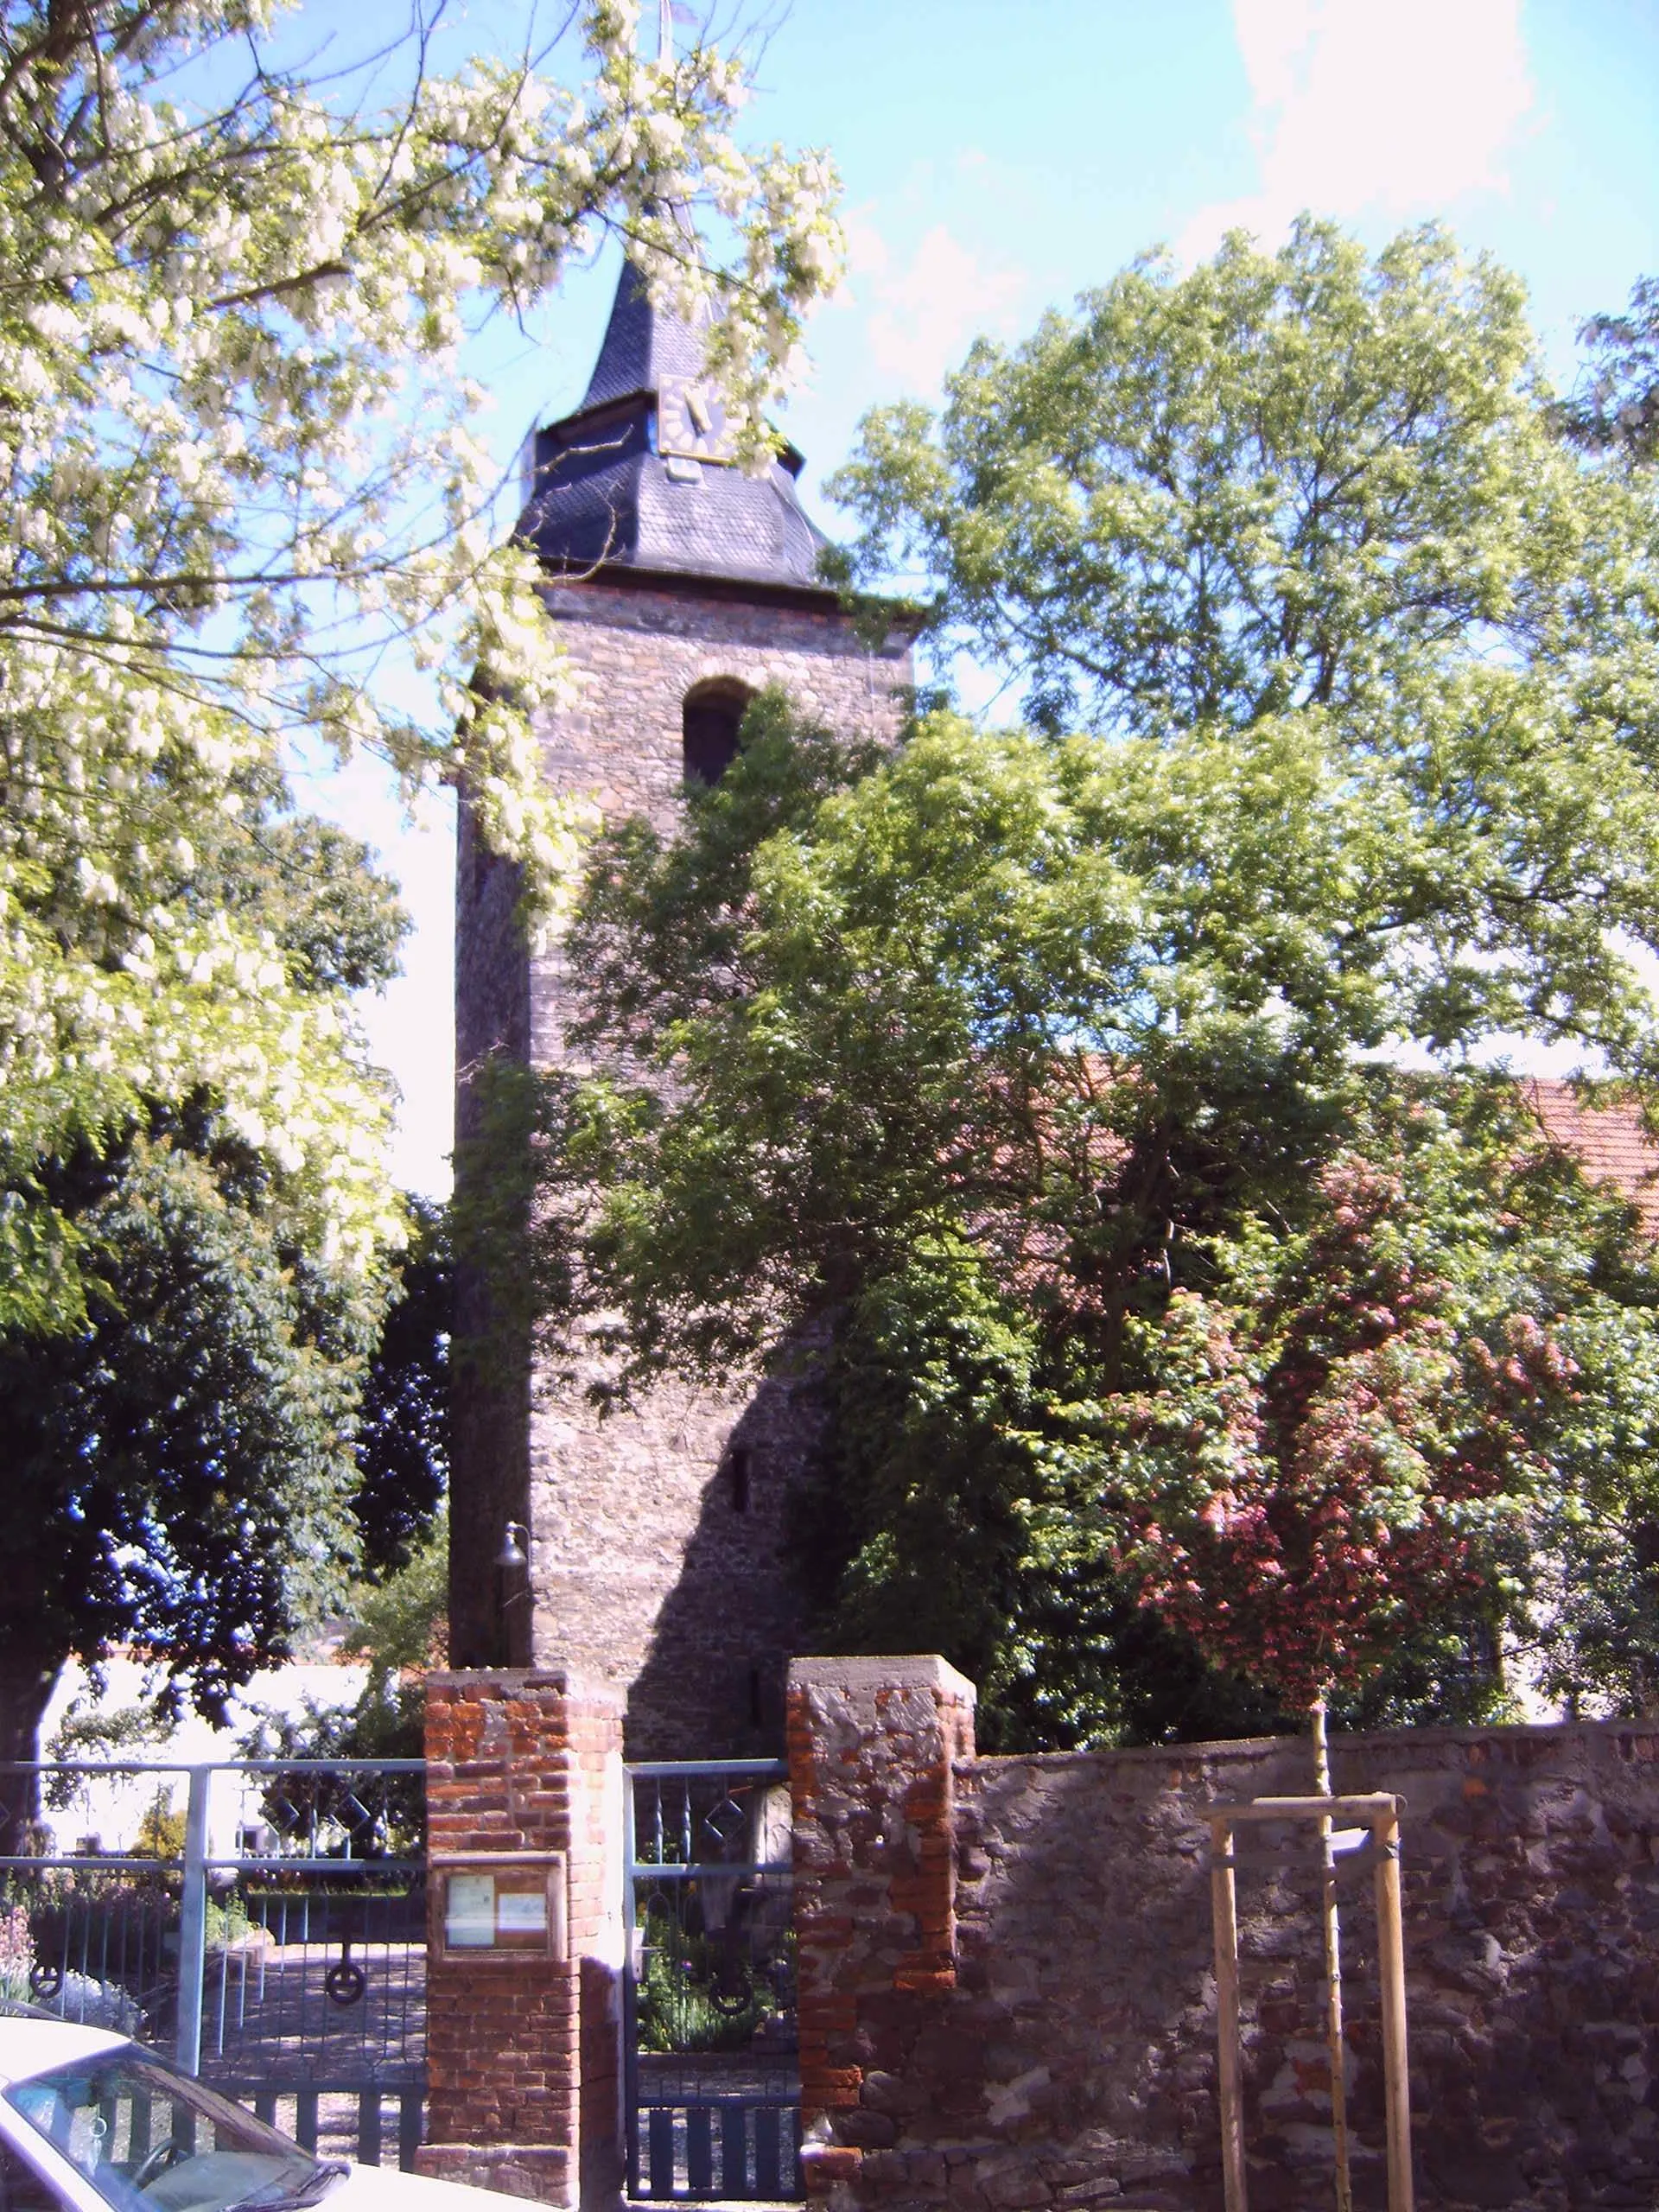 Photo showing: Kirche in Barleben, Sachsen-Anhalt, Deutschland

Bild aufgenommen am 7.6.2006